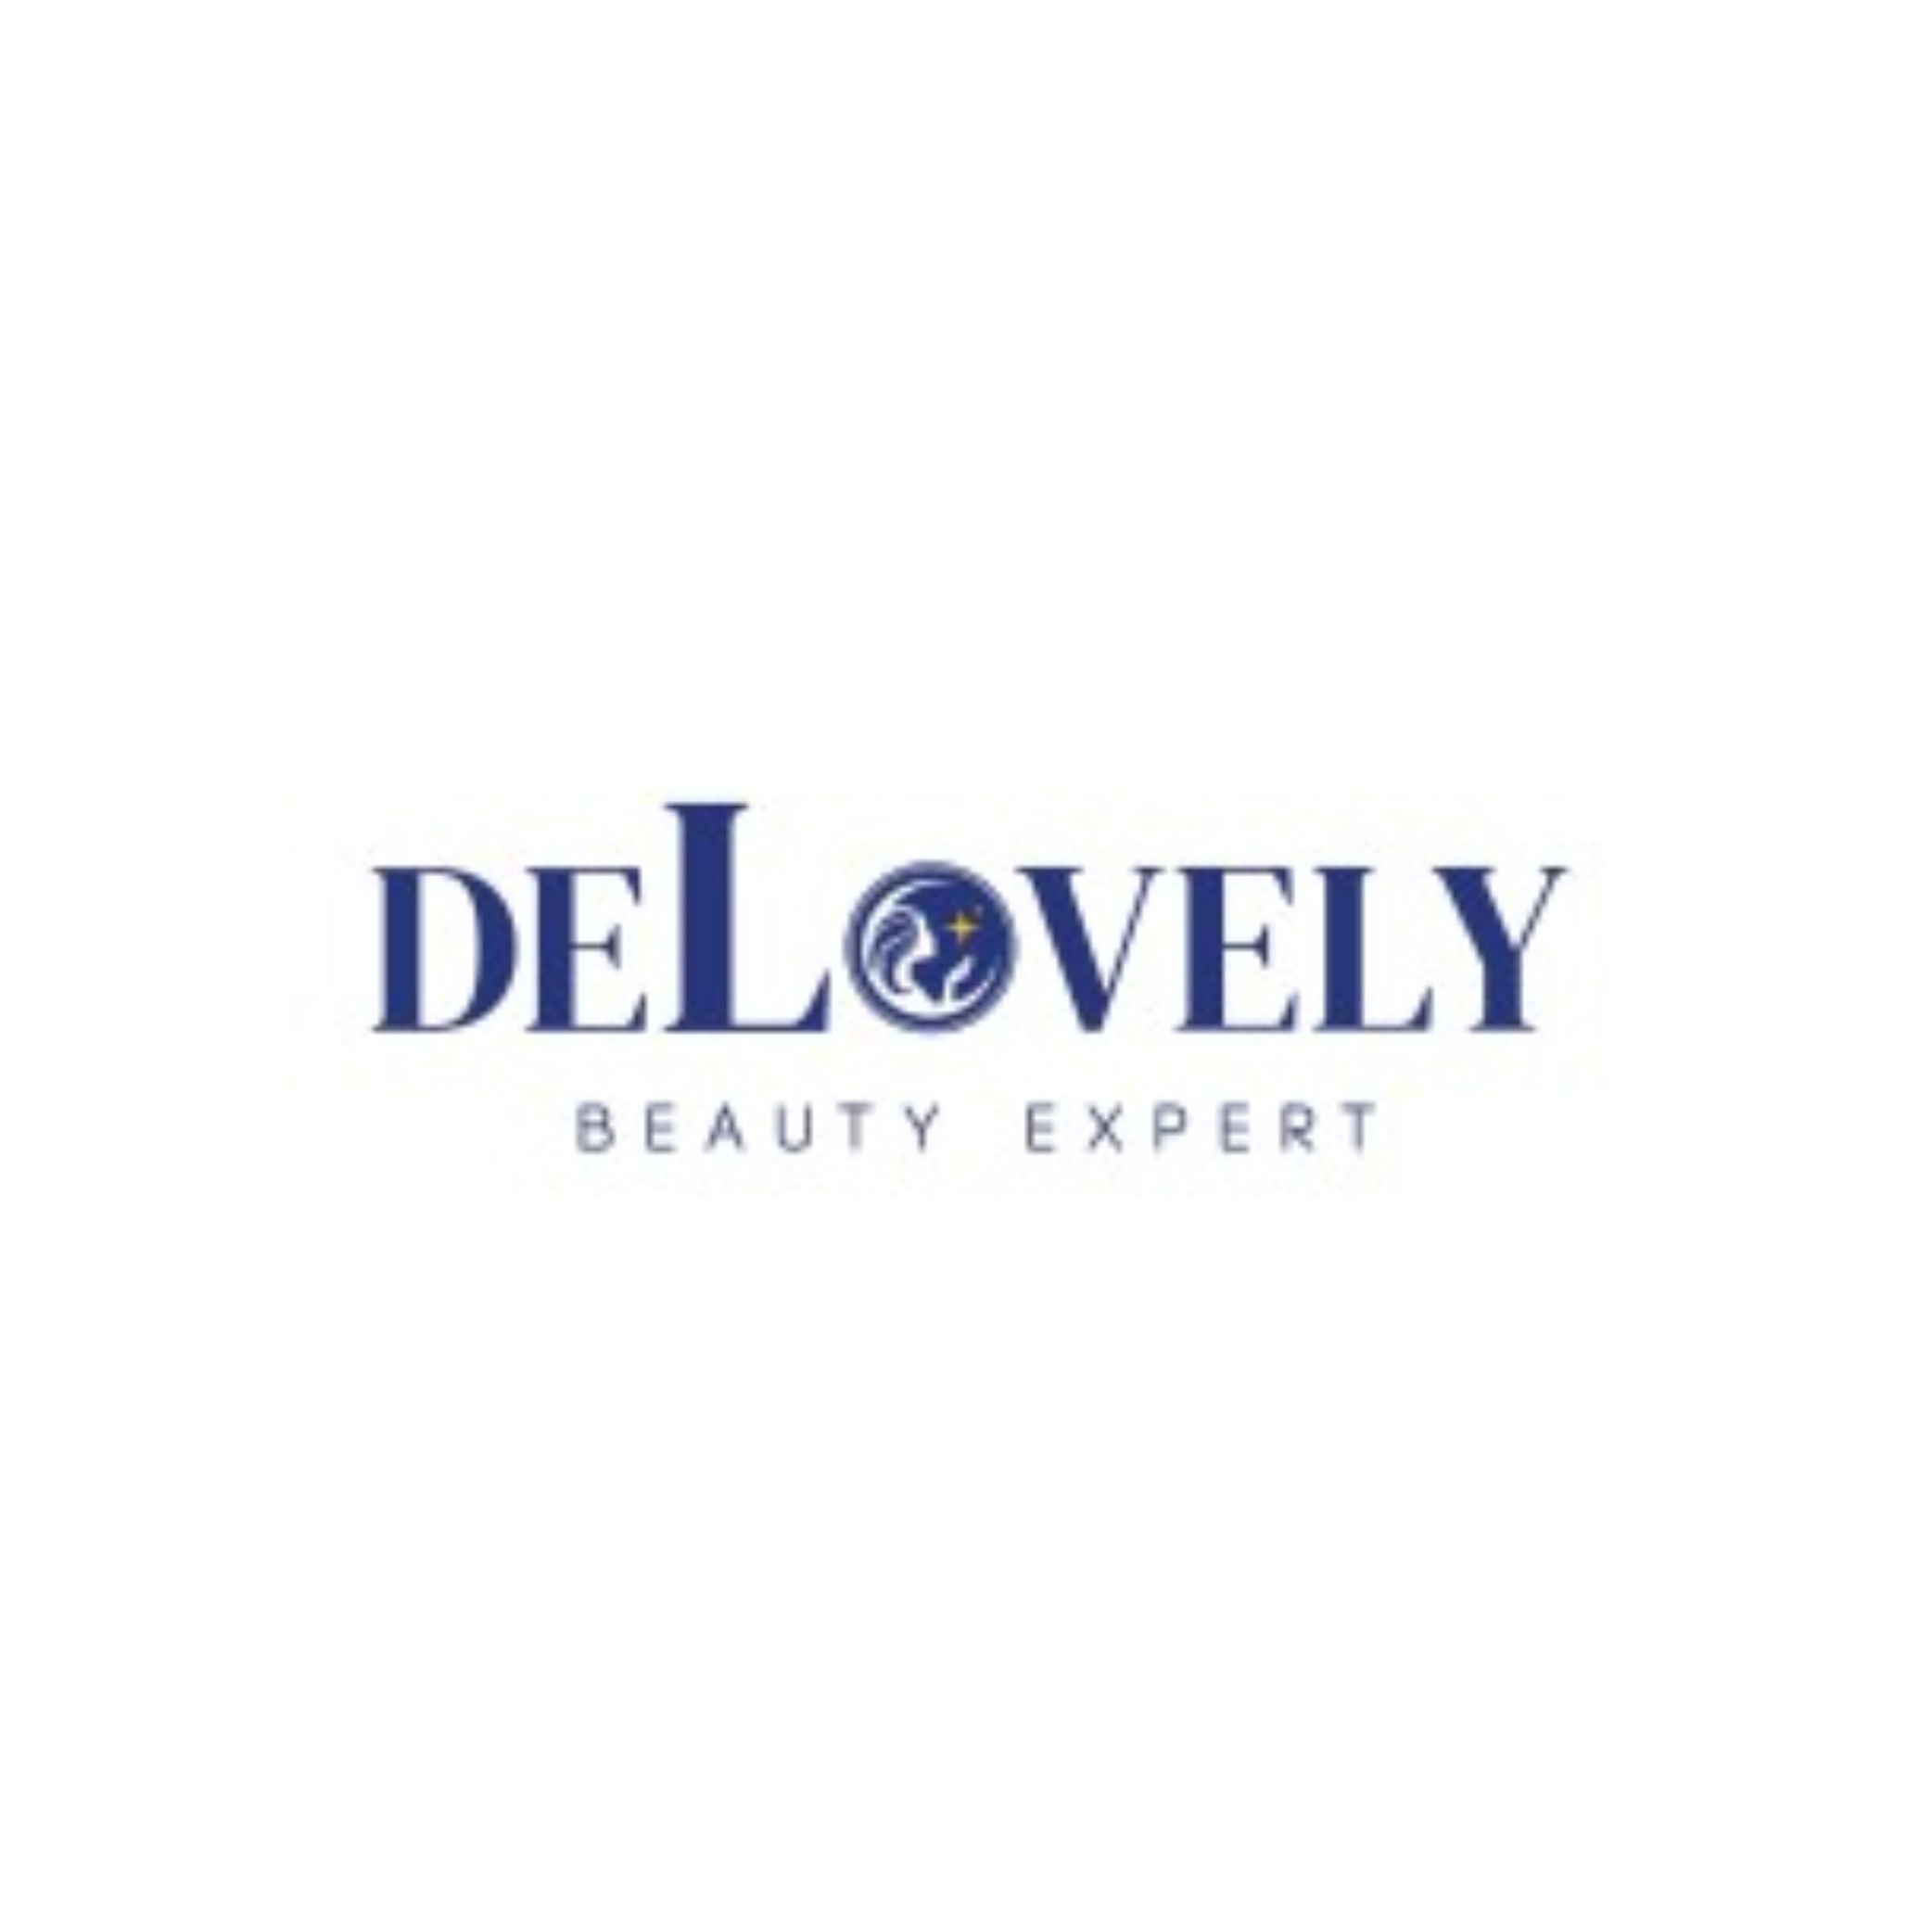 Delovely Beauty Expert